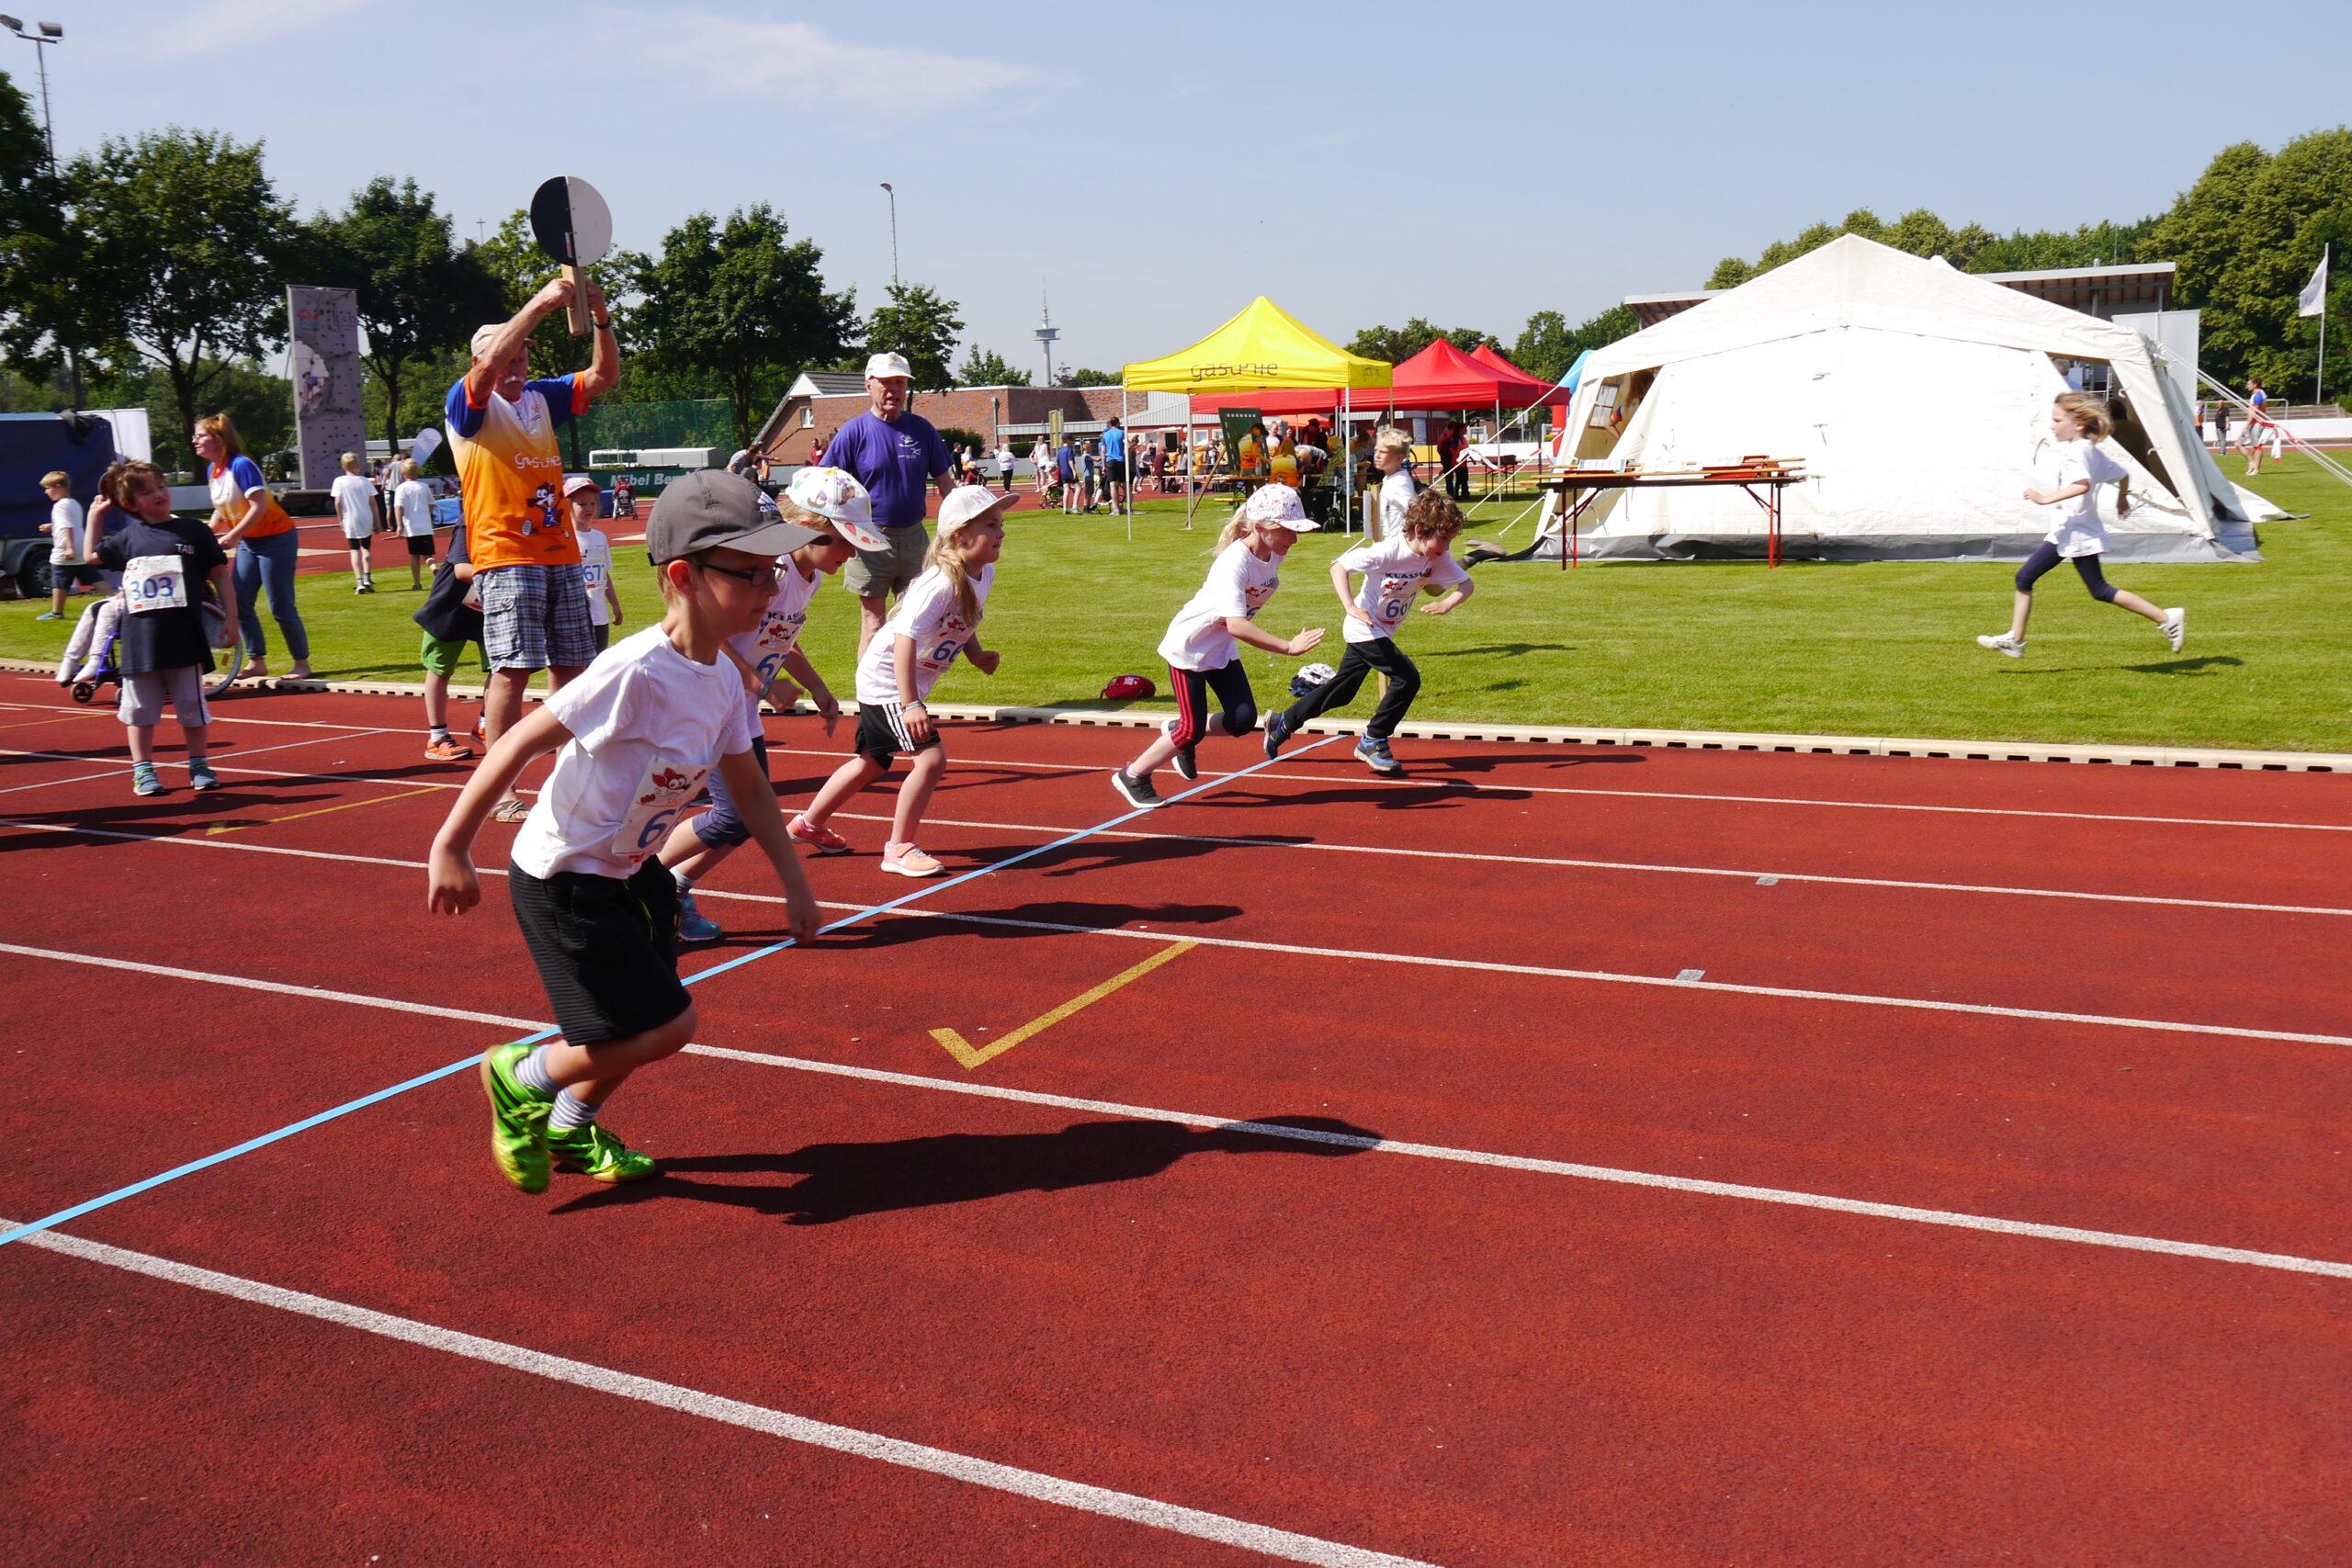 Tolle Veranstaltung: Über 900 junge Sportler*innen, davon 650 mit einer Behinderung, werden in Papenburg zusammen Spaß beim Sport haben.
Foto: KSB Emsland